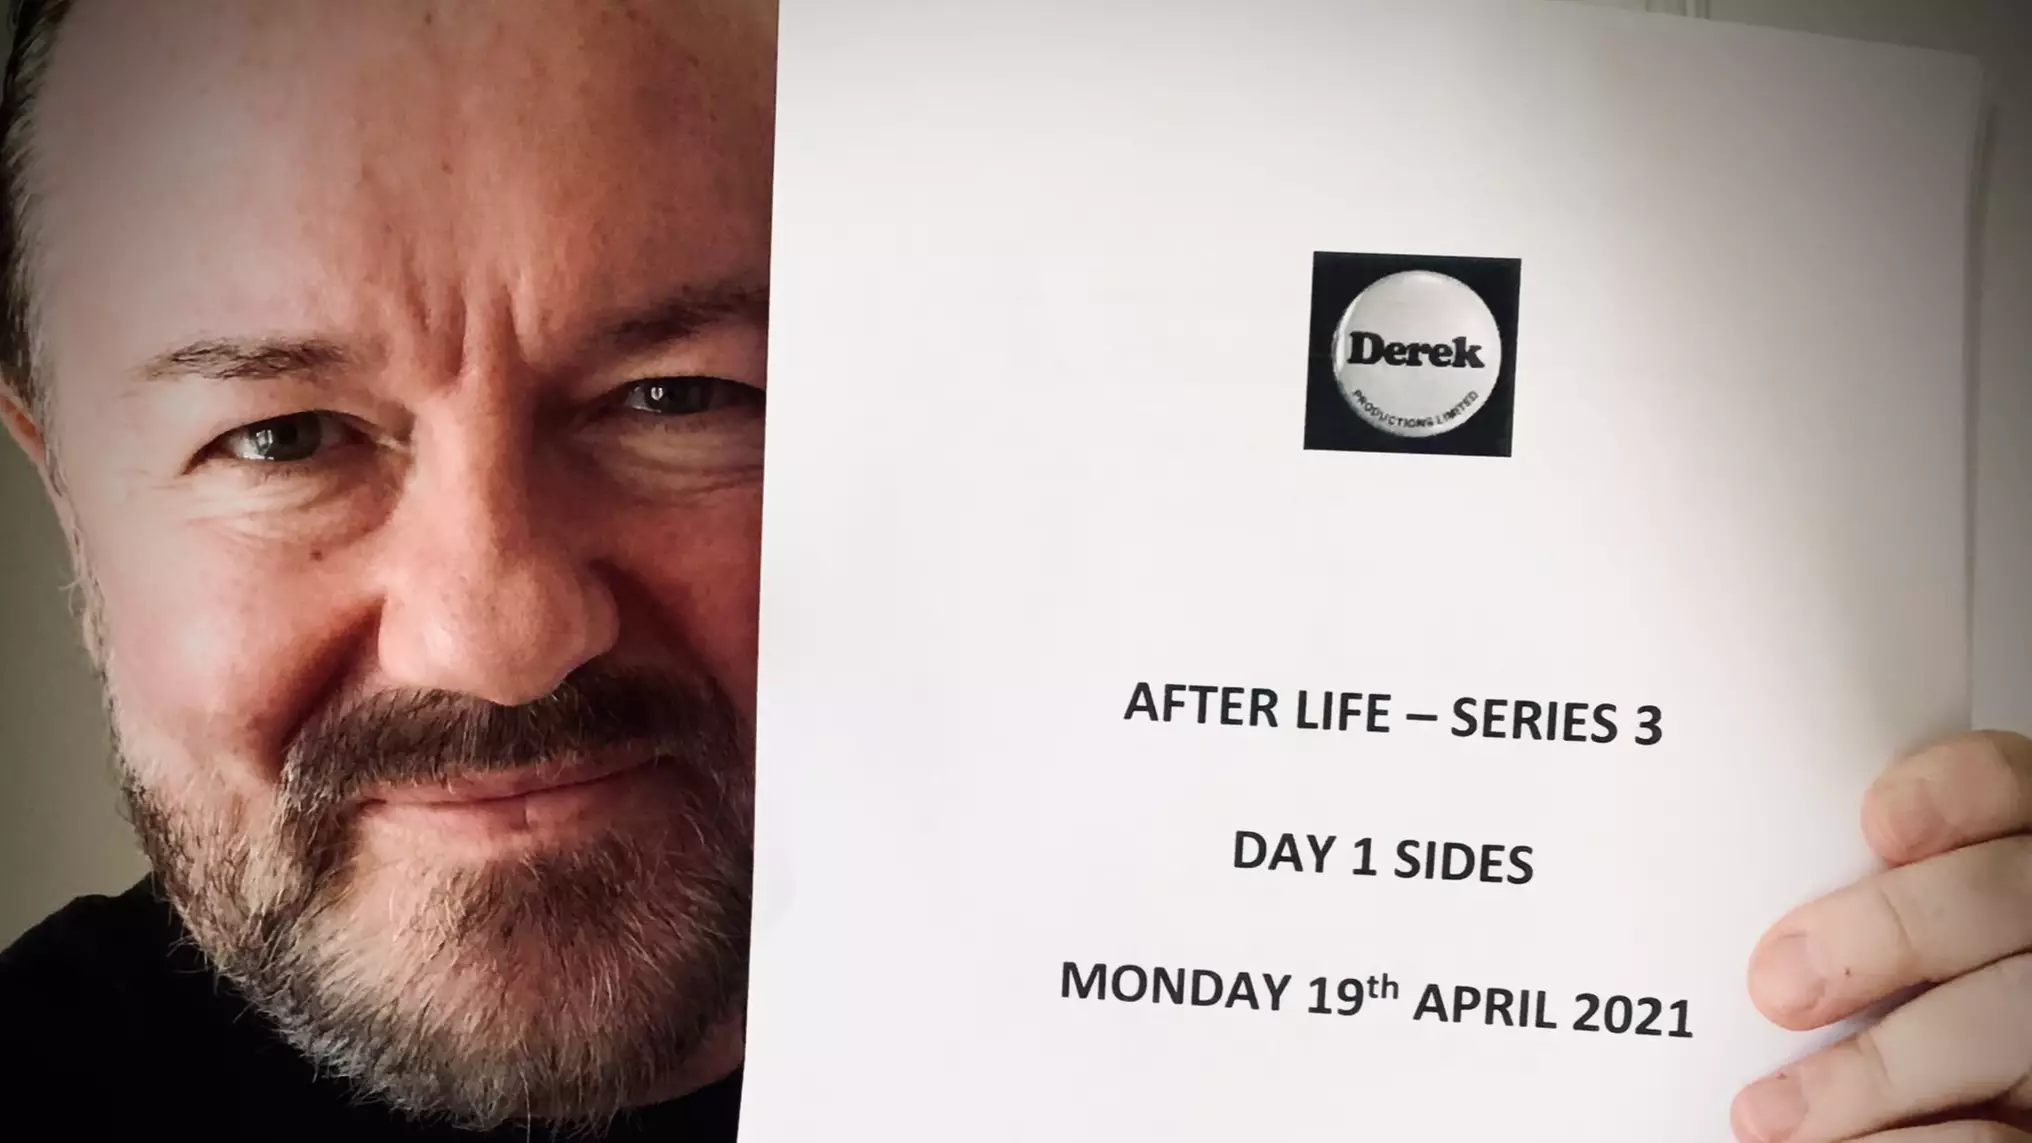 After Life Series 3 Begins Filming Next Week